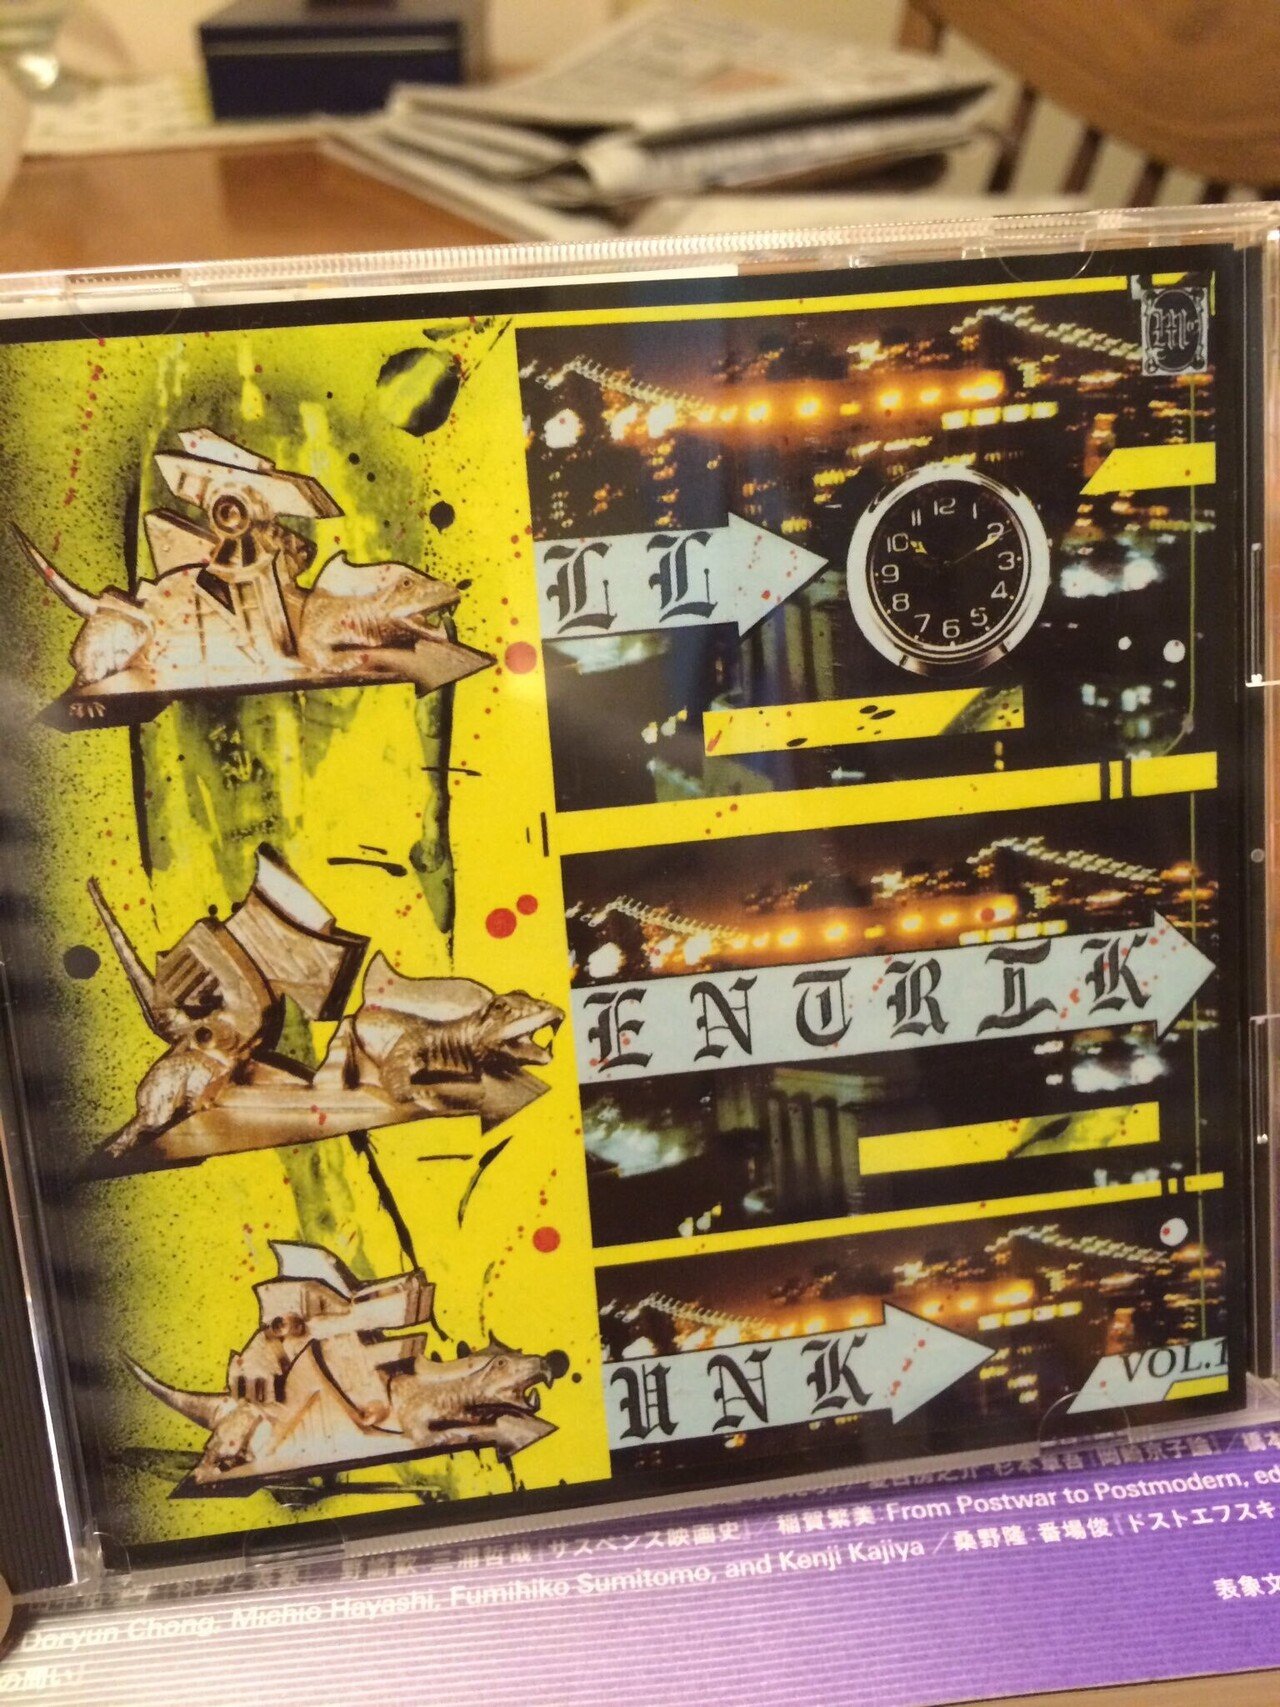 島田奈美 / Sunshower オリジナルプロモ盤 | www.ankuramindia.com